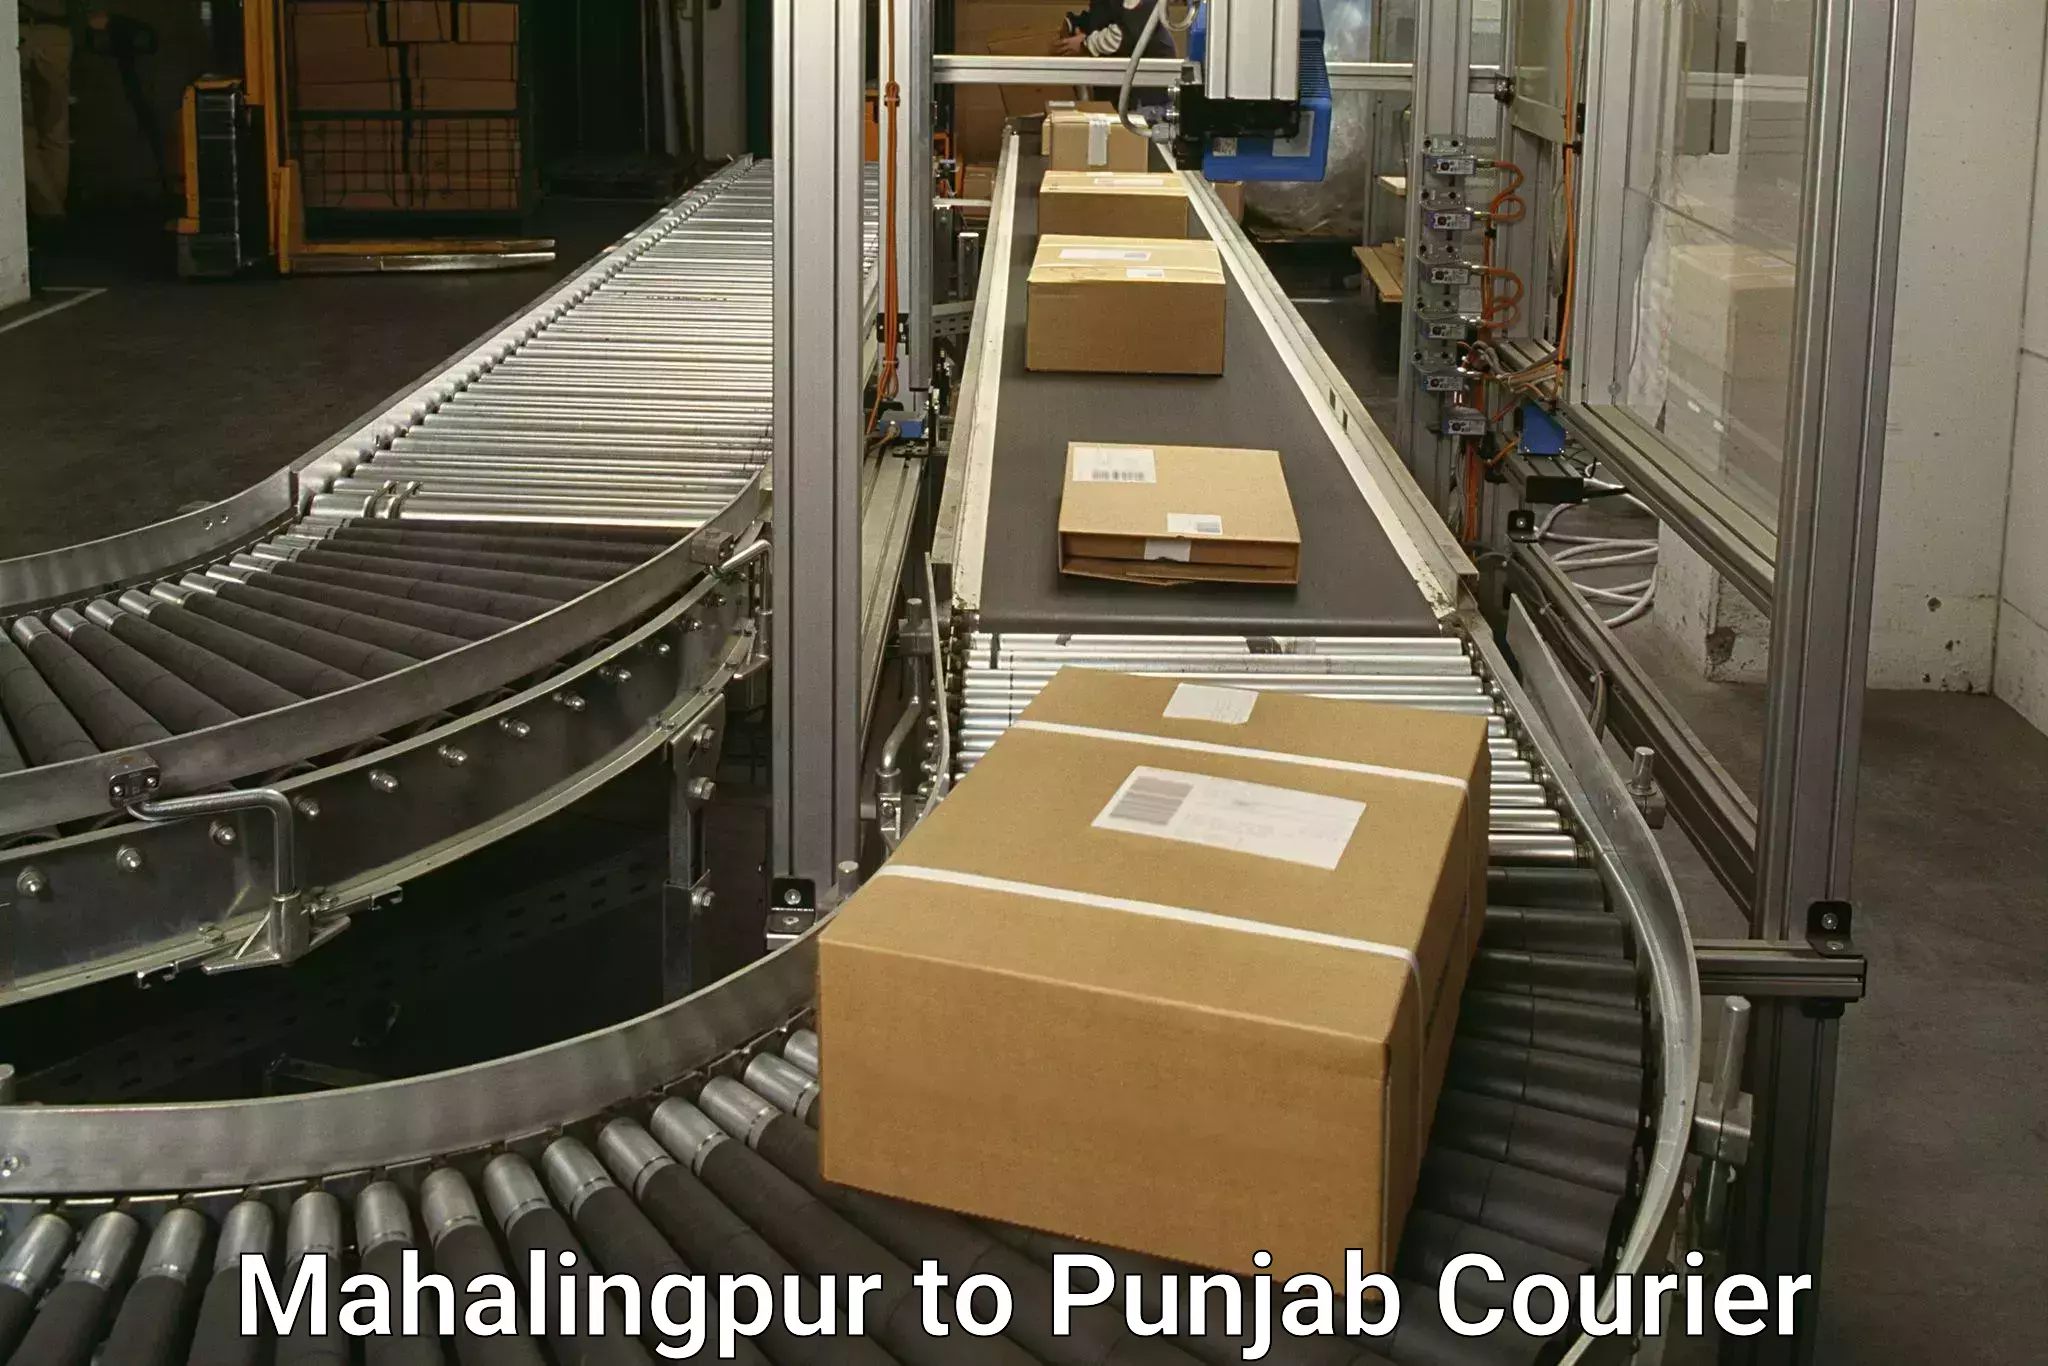 Courier services Mahalingpur to Dinanagar